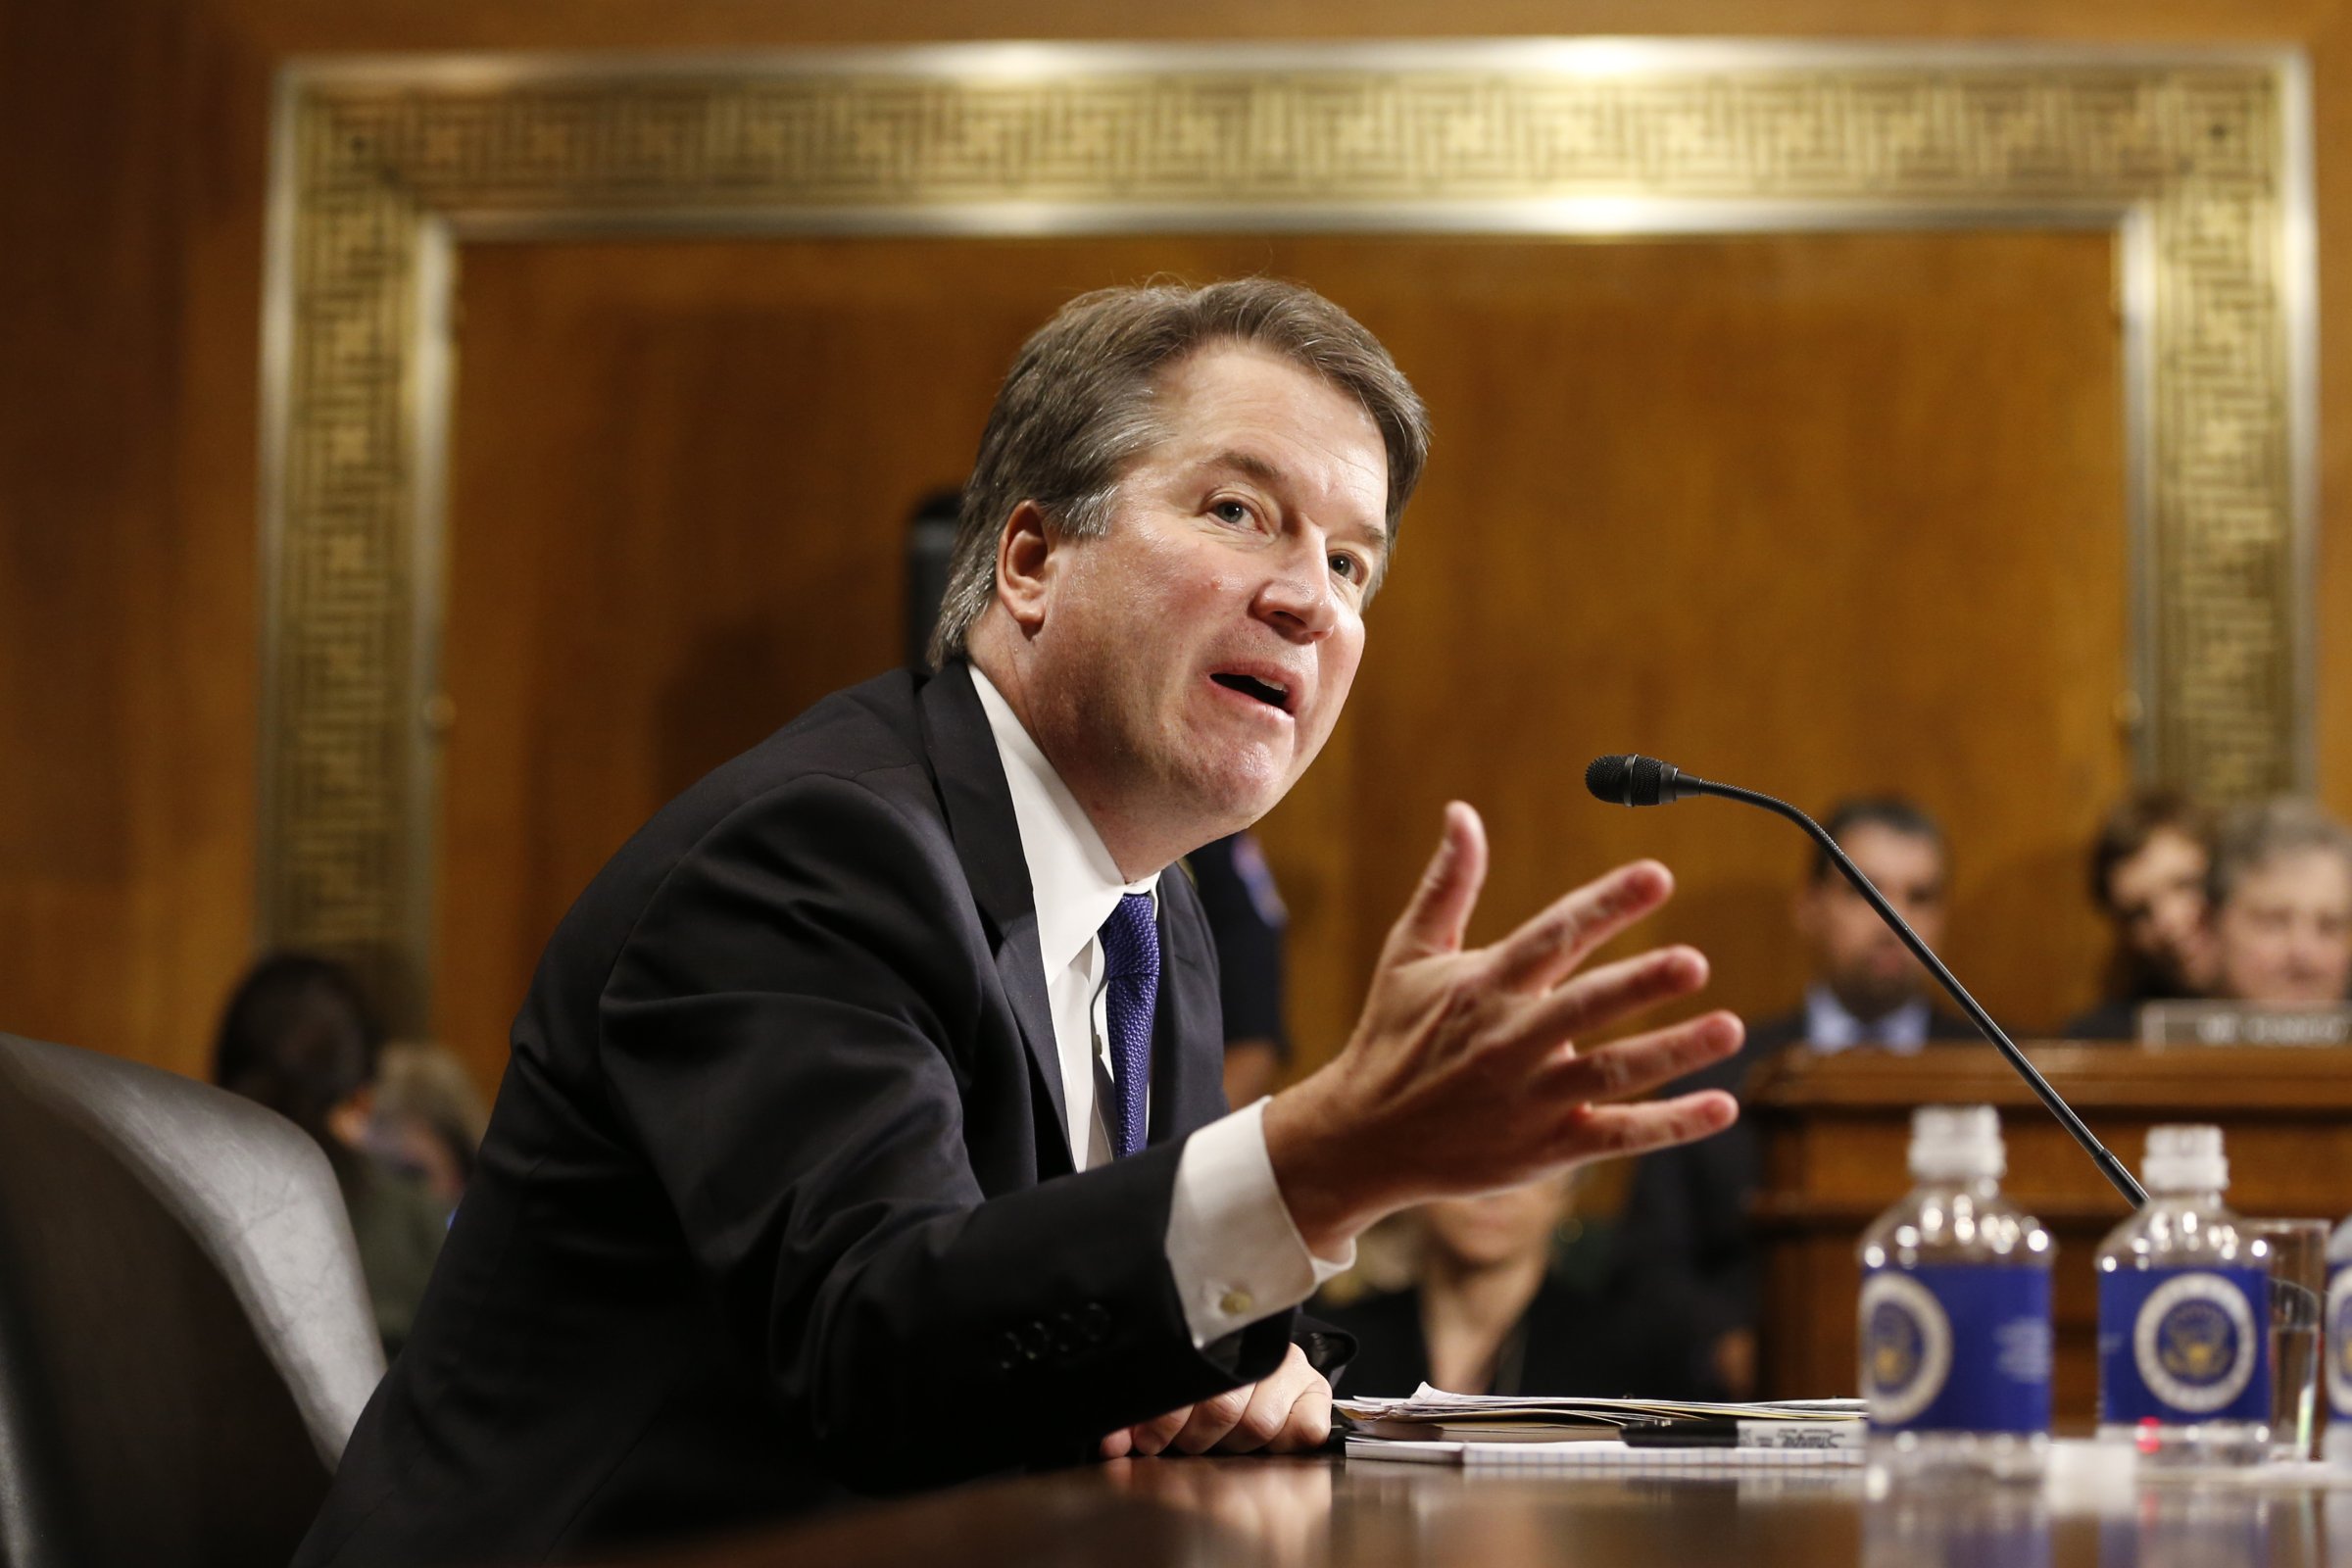 Supreme Court Nominee Brett Kavanaugh Testifies To Senate Judiciary Committee